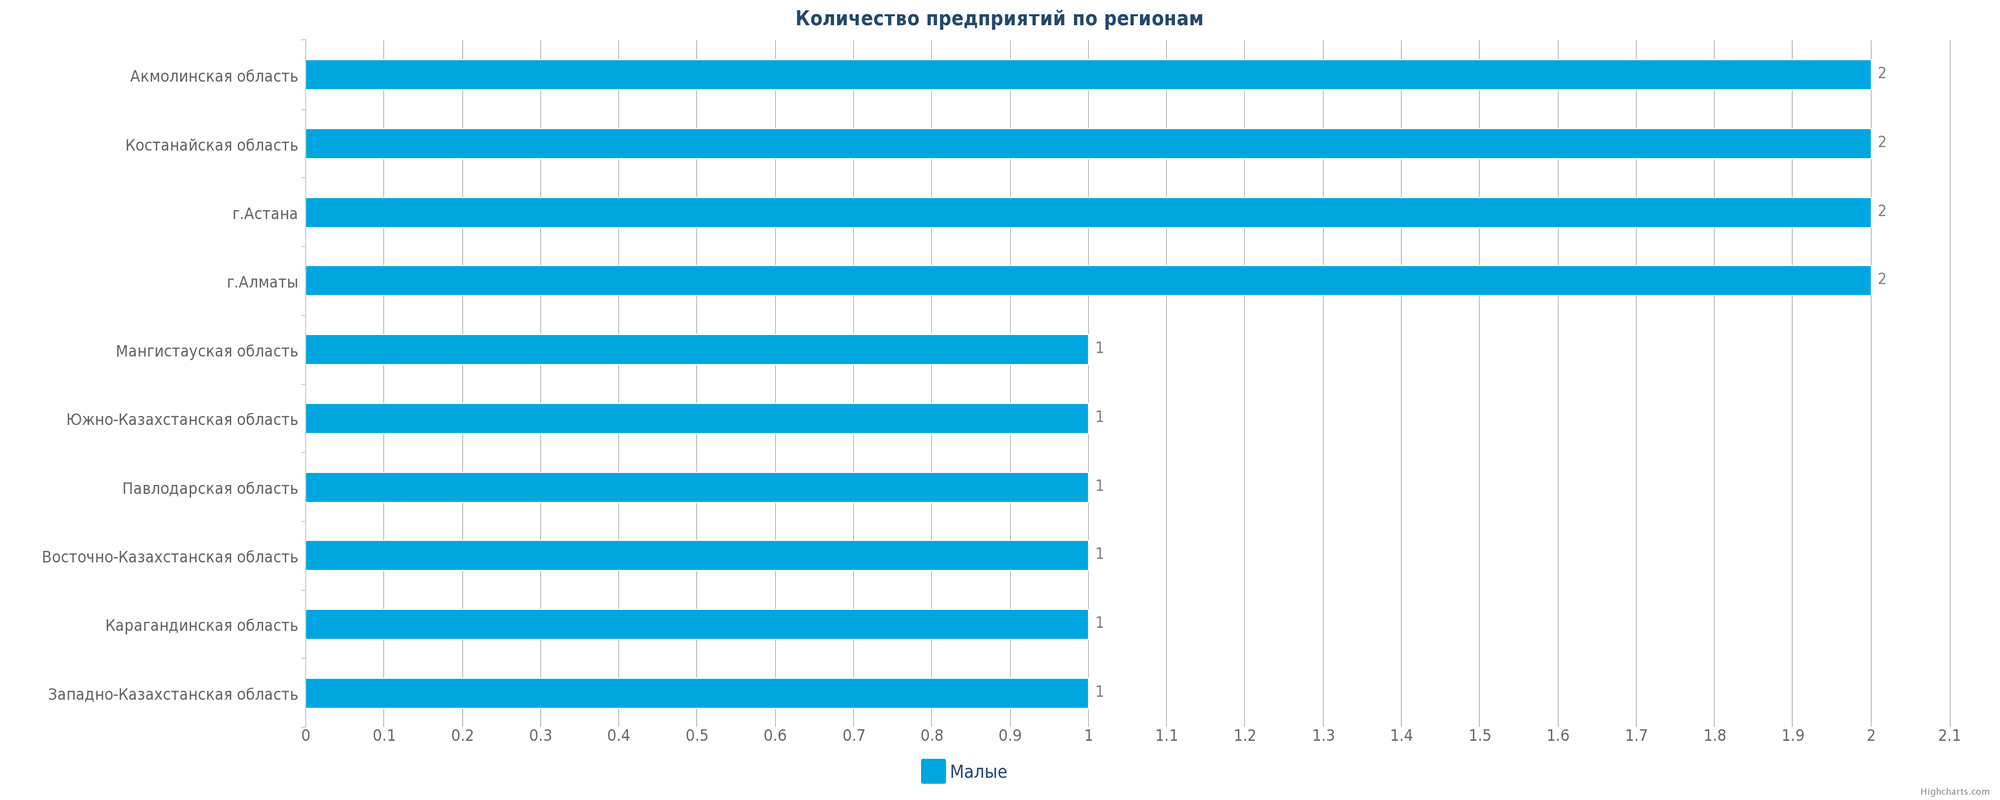 Количество новых производственных компаний по регионам РК